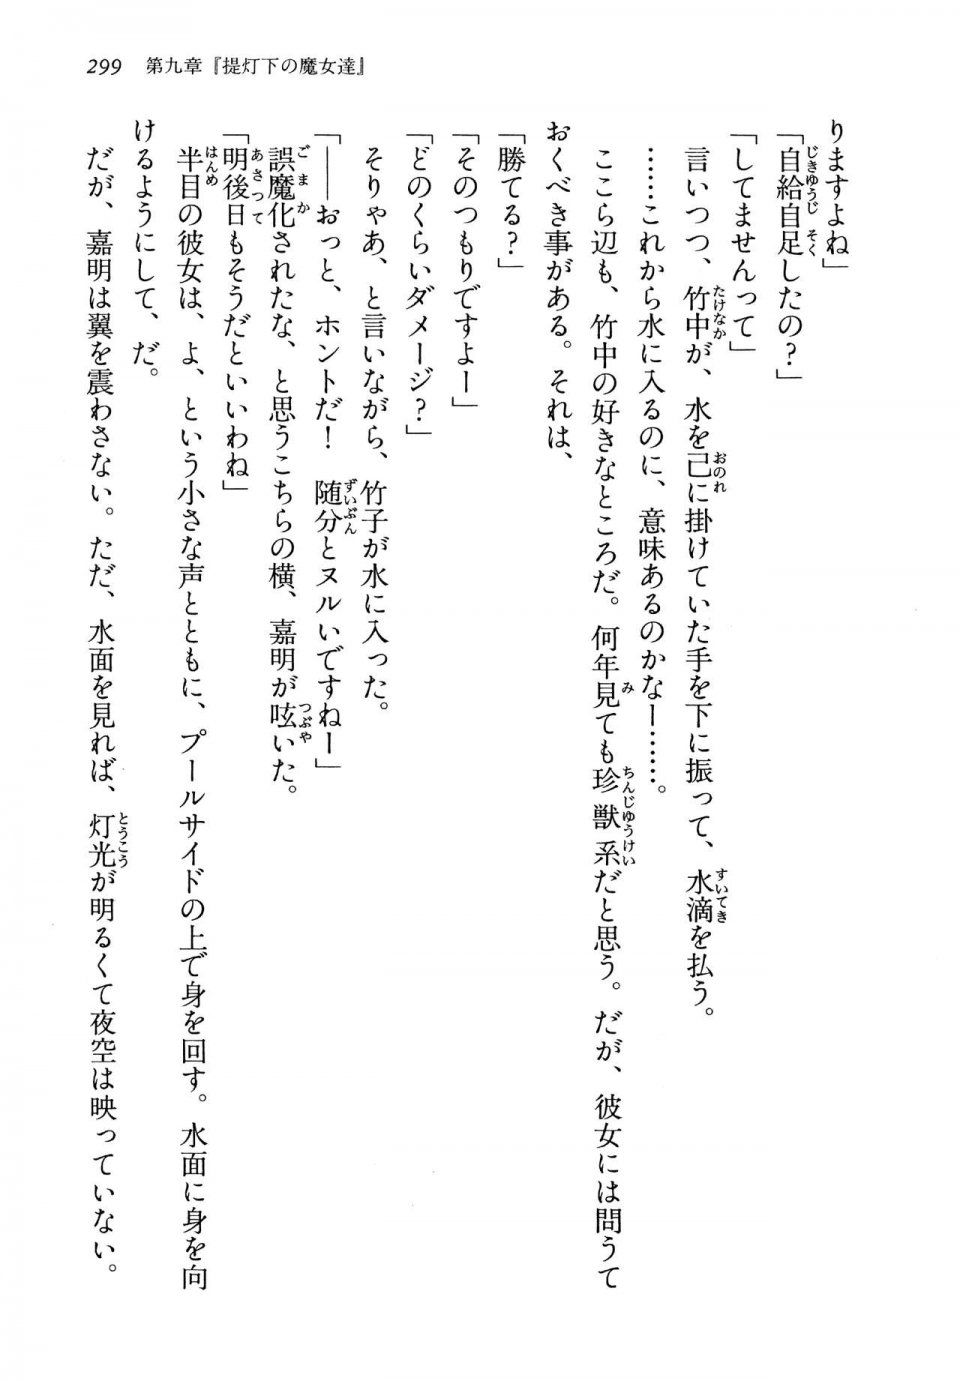 Kyoukai Senjou no Horizon LN Vol 13(6A) - Photo #299